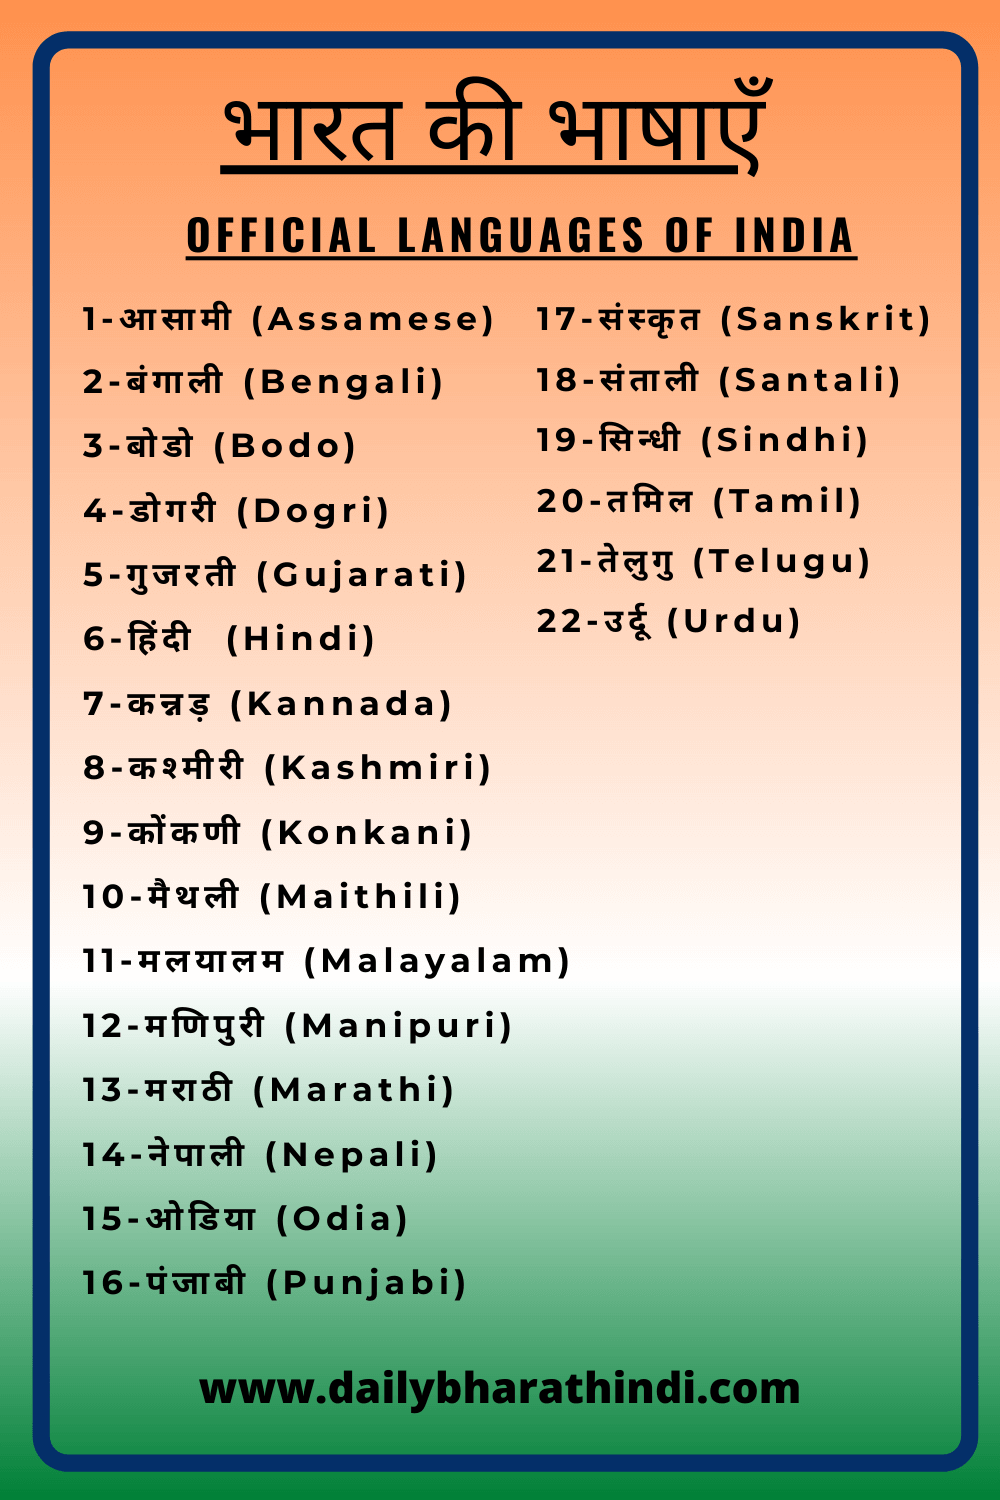 india tour in hindi language